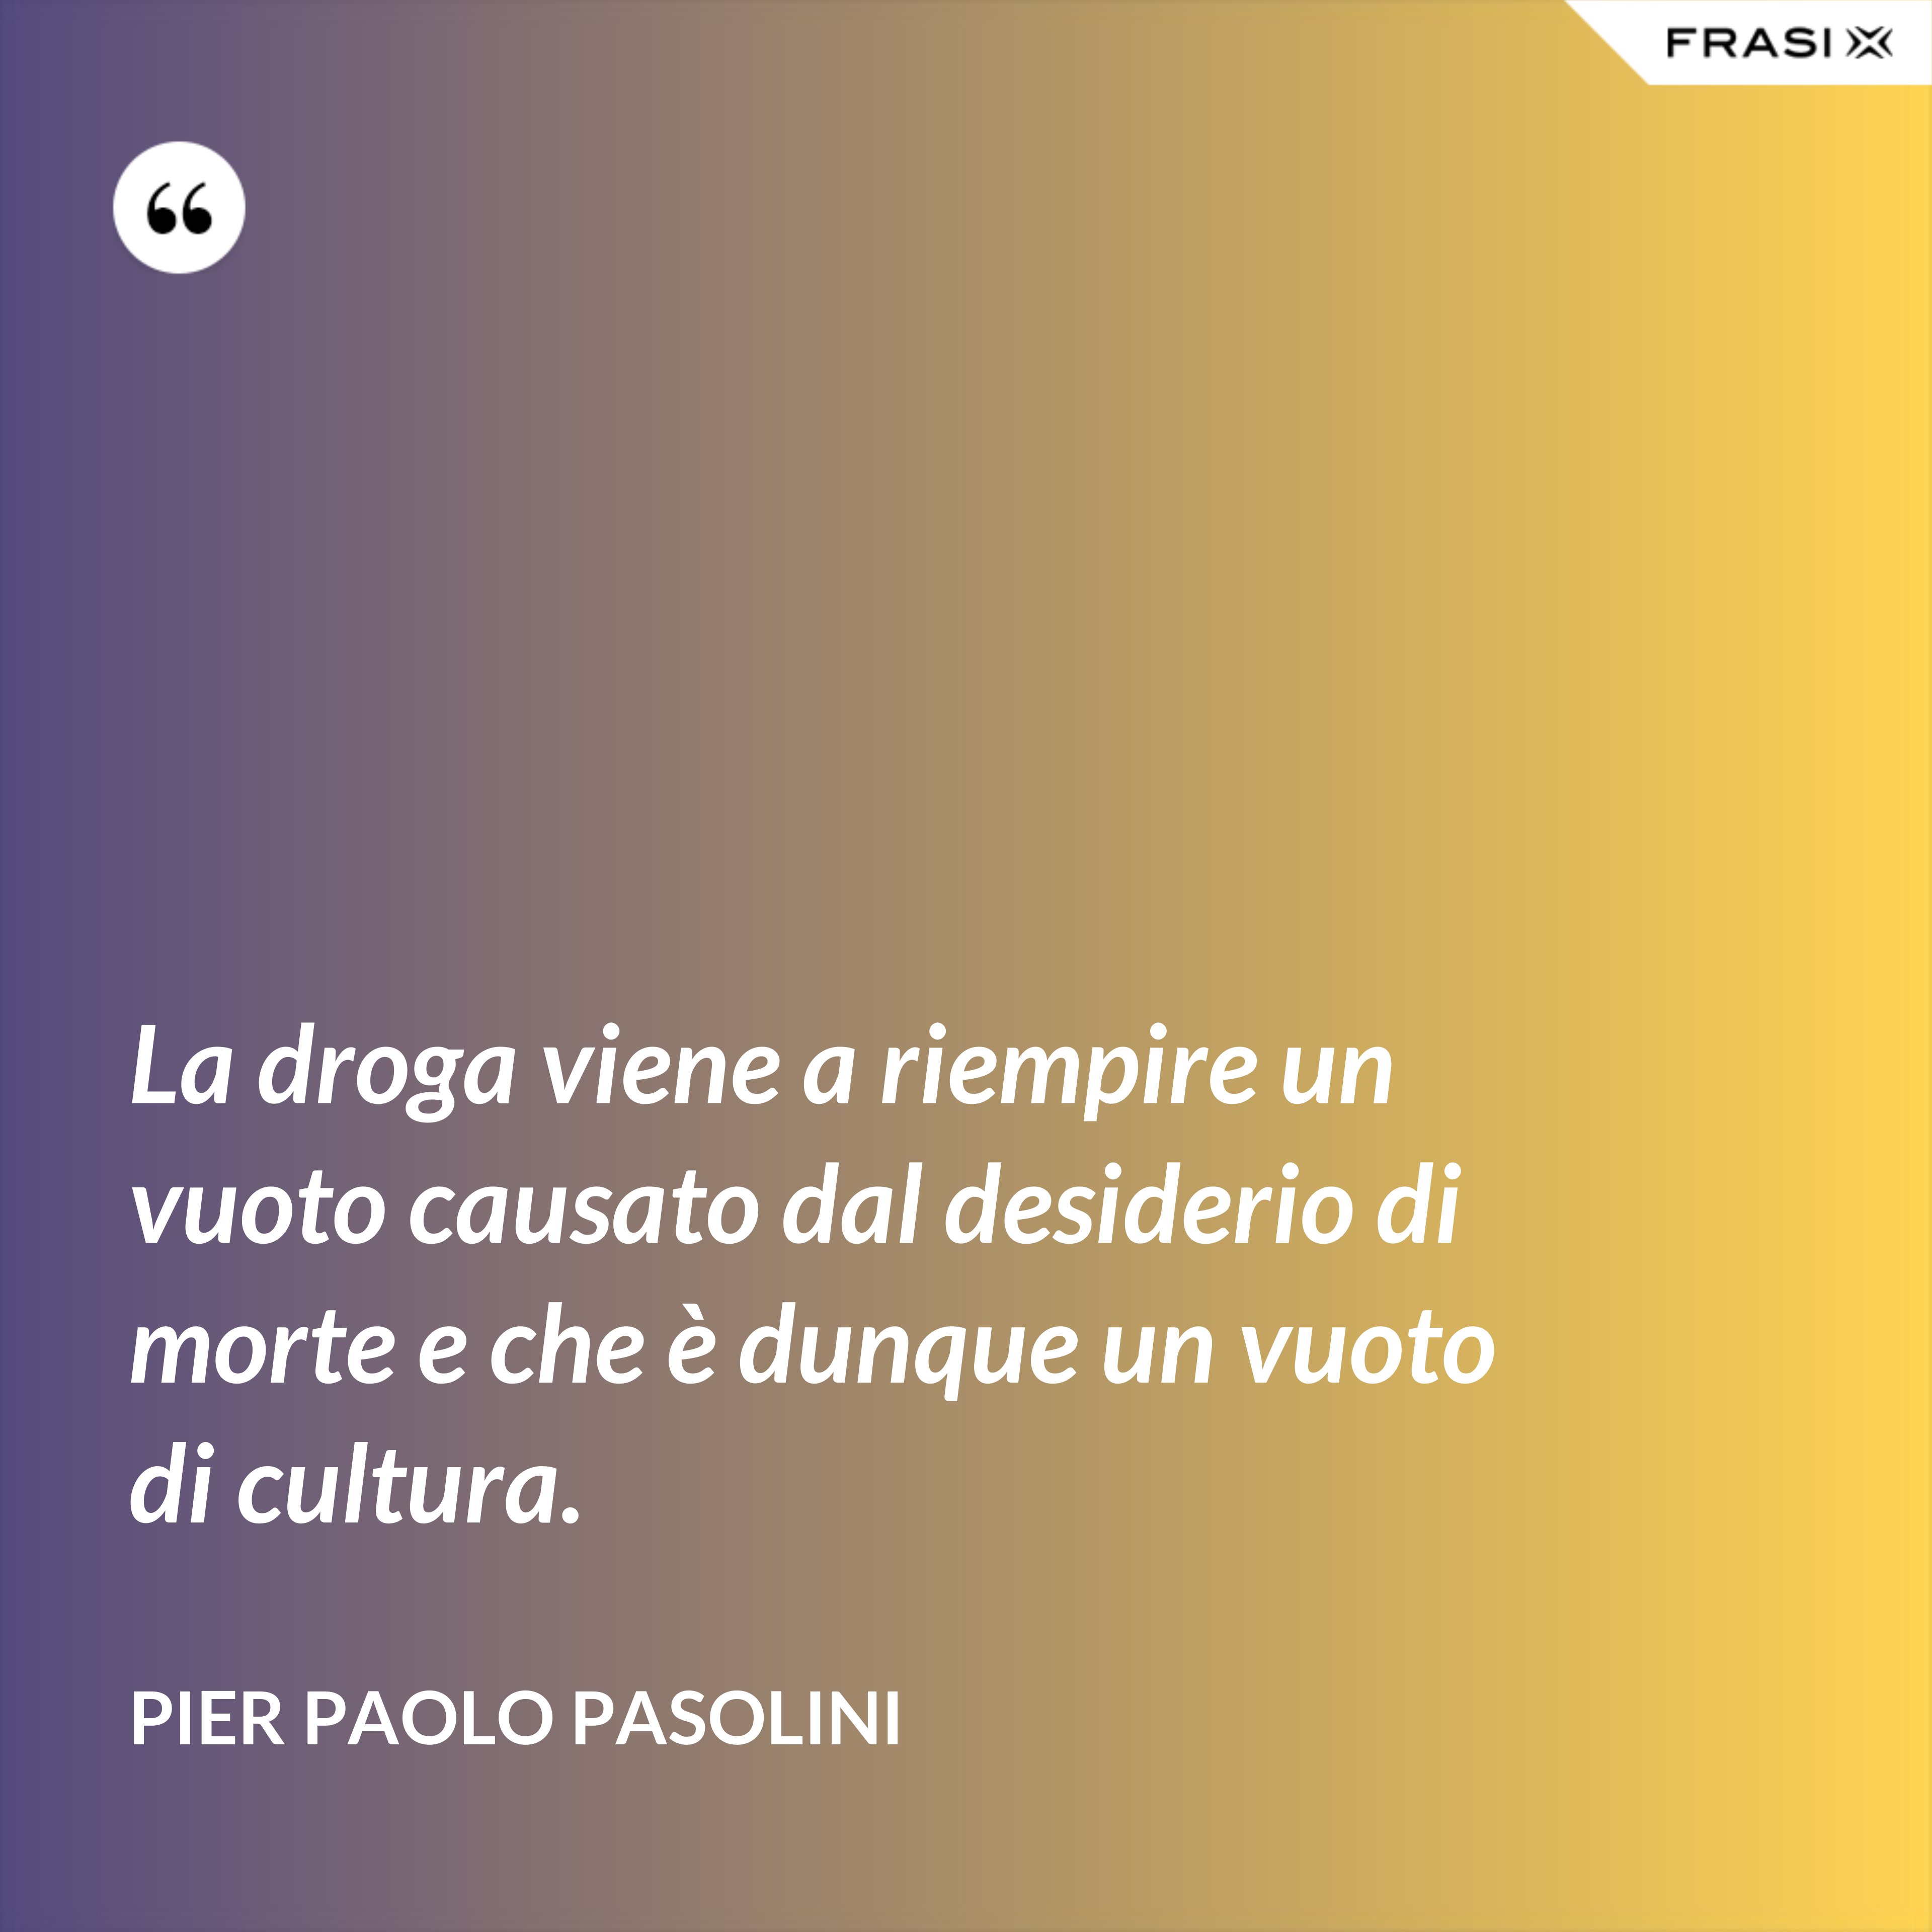 La droga viene a riempire un vuoto causato dal desiderio di morte e che è dunque un vuoto di cultura. - Pier Paolo Pasolini